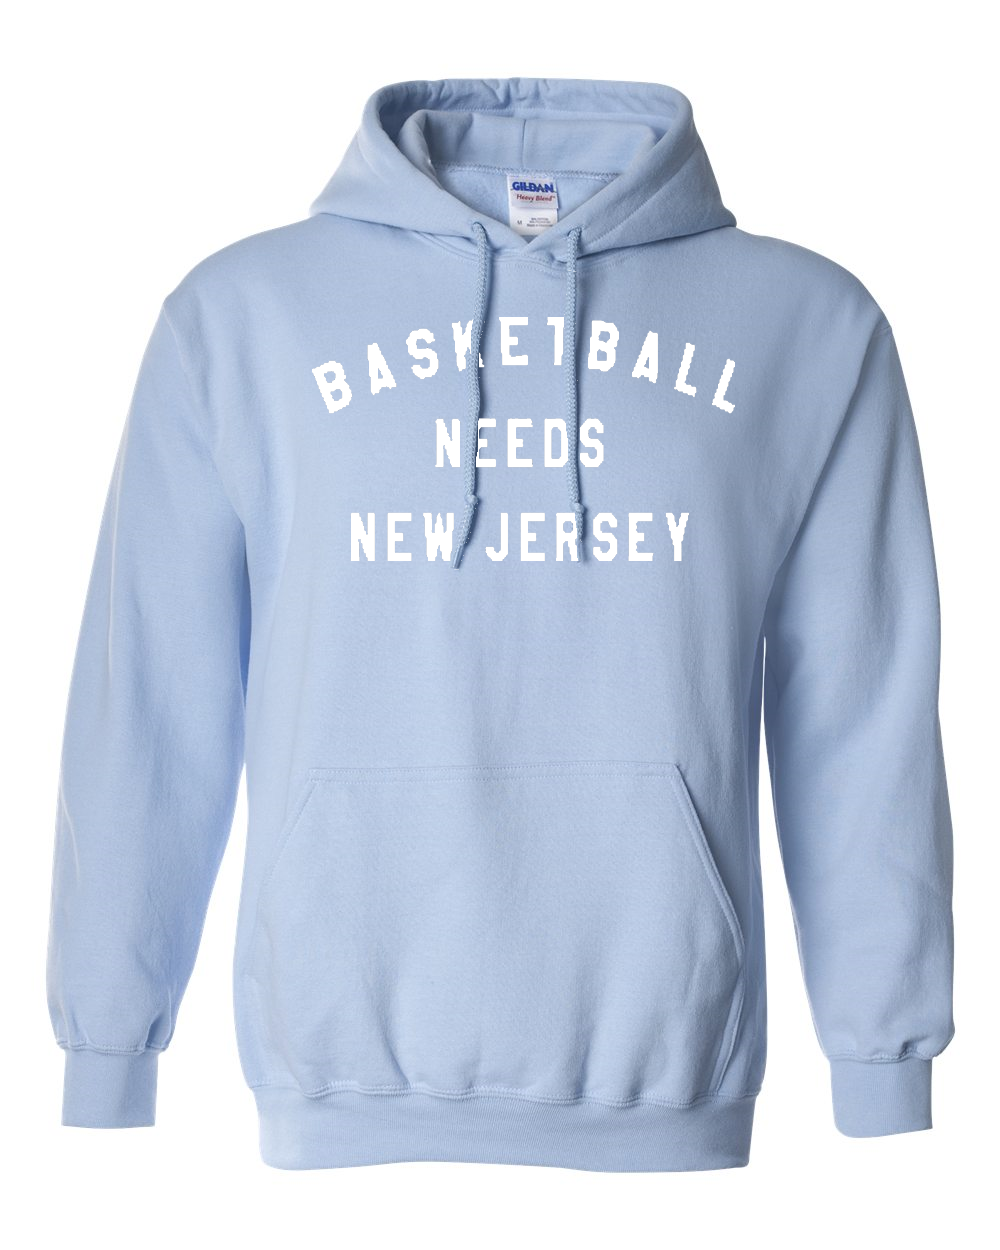 Basketball Jersey Hooded Sweatshirt スウェット 